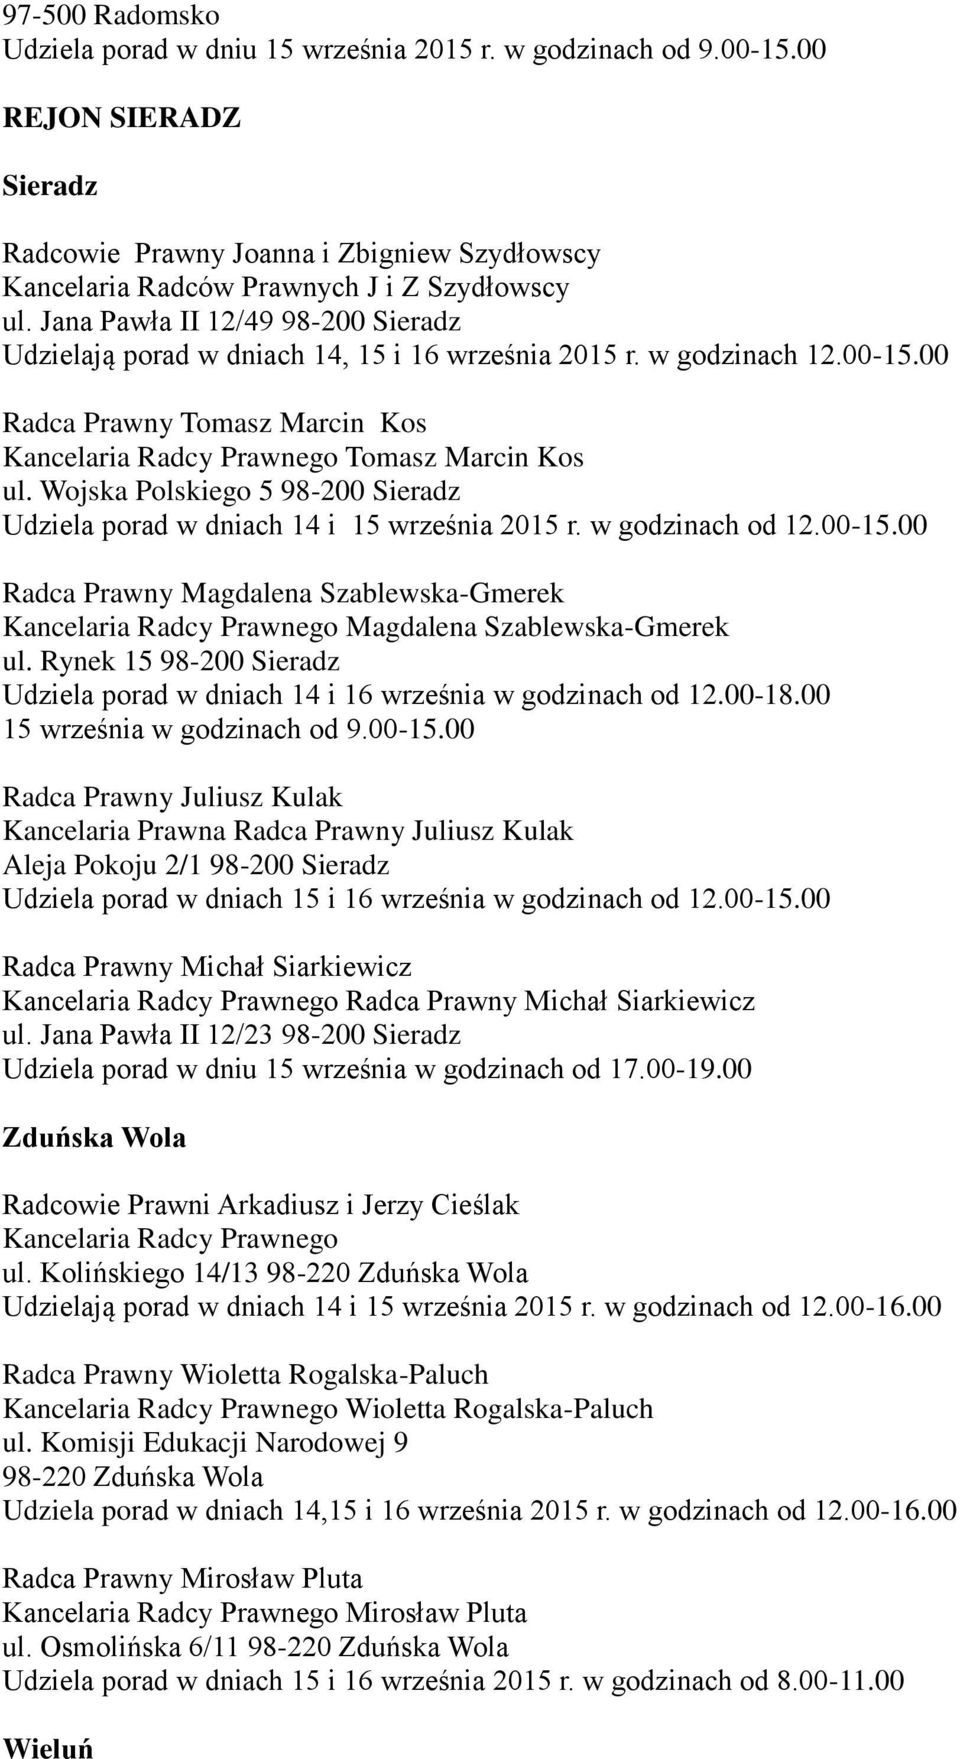 Wojska Polskiego 5 98-200 Sieradz Udziela porad w dniach 14 i 15 września 2015 r. w godzinach od 12.00-15.